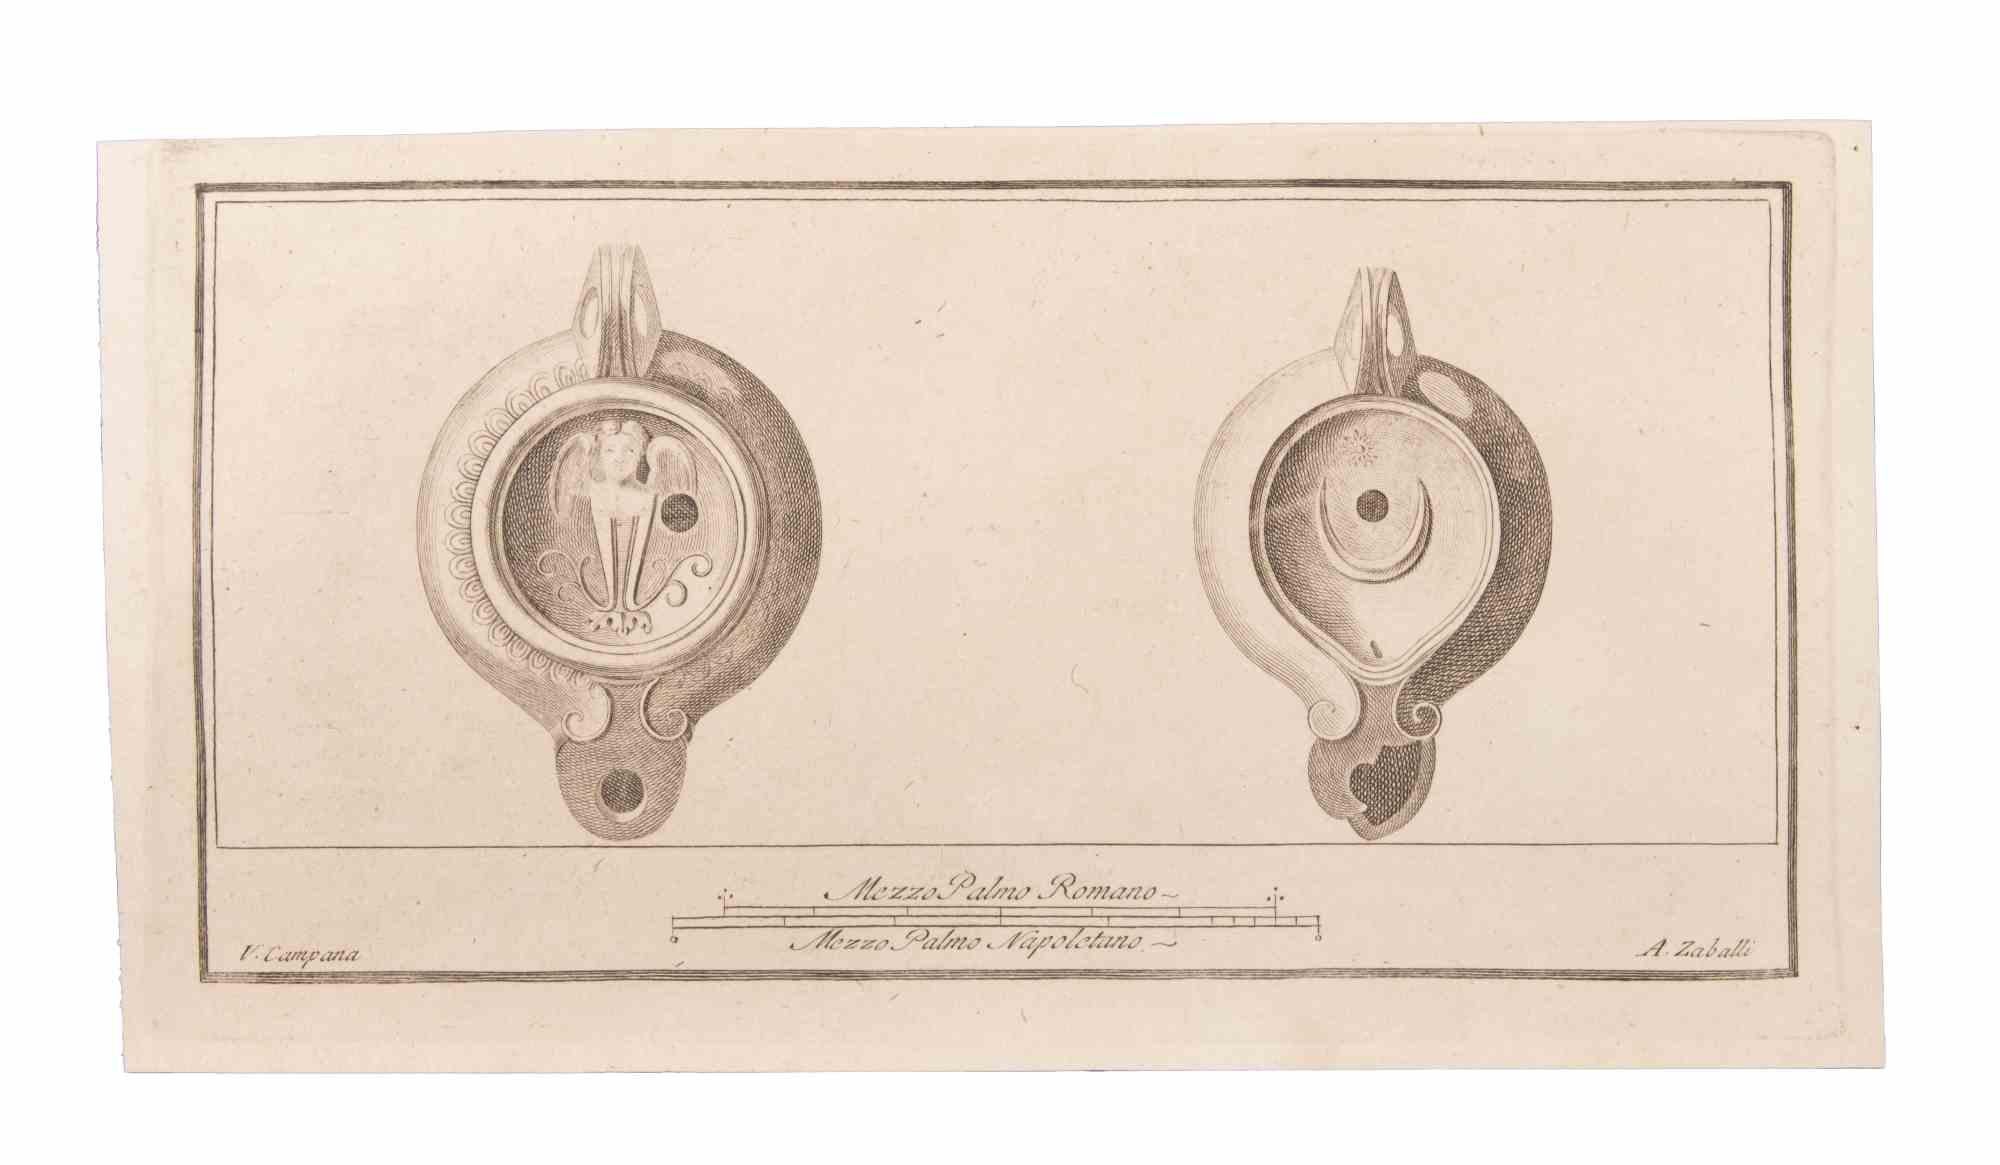 Öllampe zum Aufhängen ist eine Radierung von Vincenzo Campana (1730-1806).

Die Radierung gehört zu der Druckserie "Antiquities of Herculaneum Exposed" (Originaltitel: "Le Antichità di Ercolano Esposte"), einem achtbändigen Band mit Stichen von